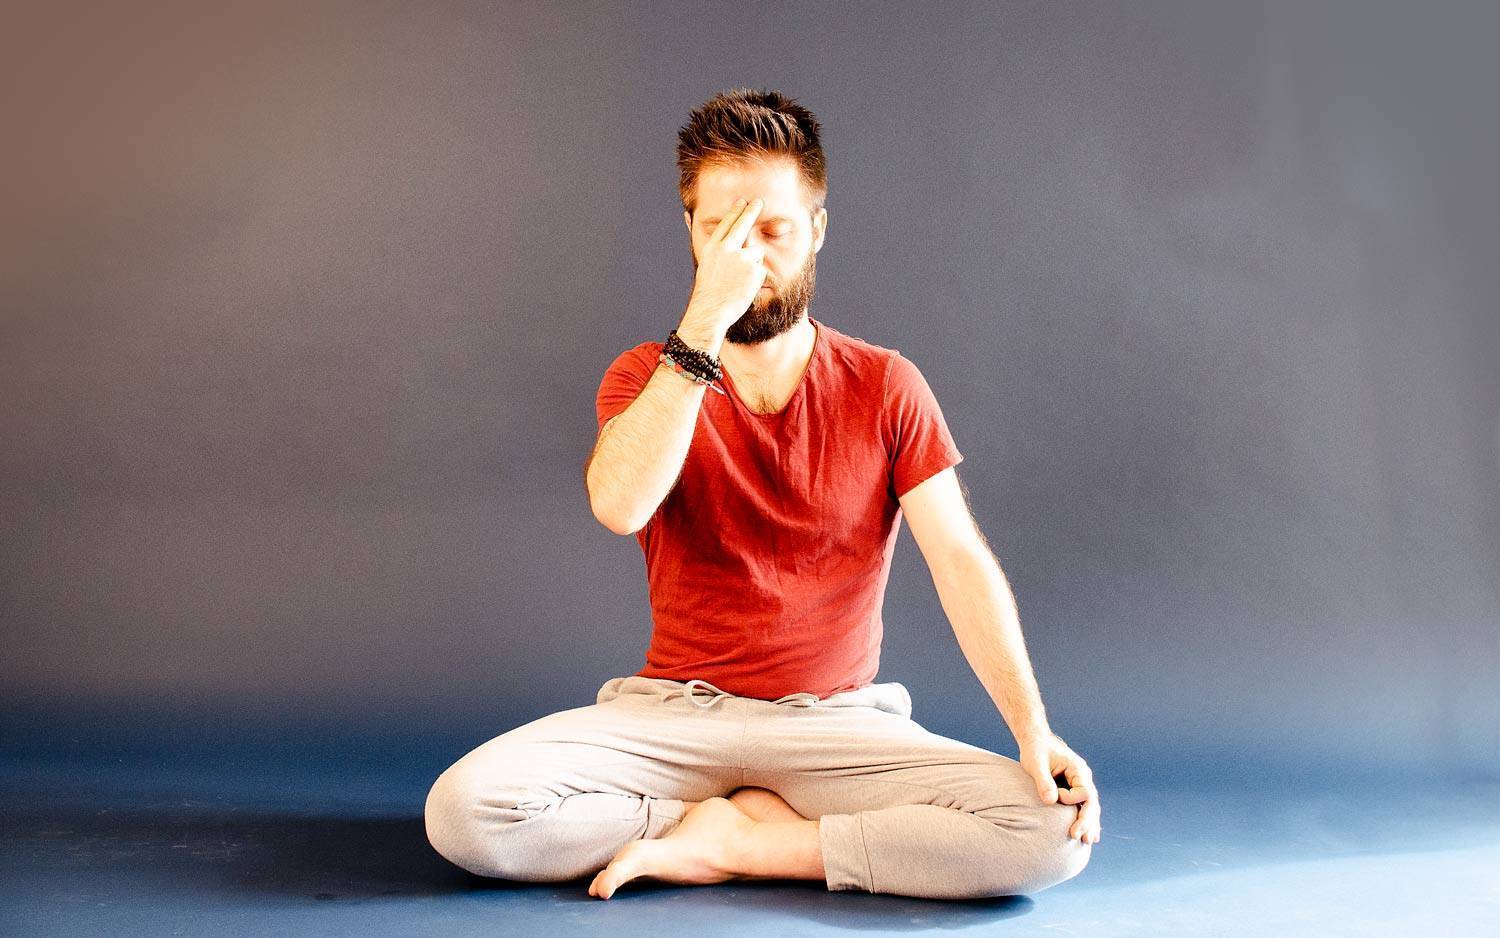 Пранаяма - техника дыхания в йоге для начинающих, дыхательные упражнения пранаямы для работы с энергией - студия йоги чакра